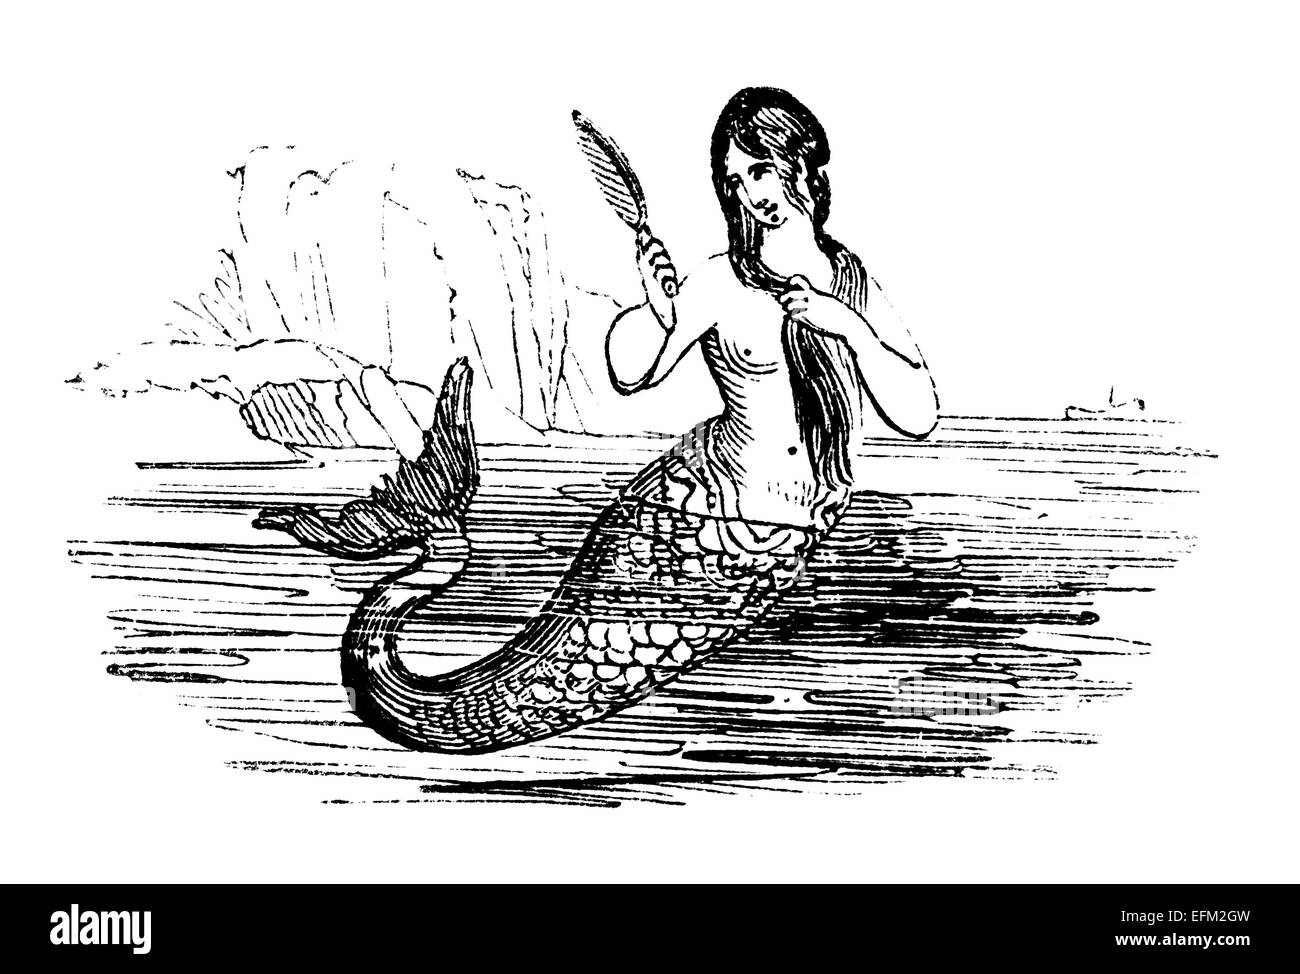 Gravure du xixe siècle d'une sirène dans la mer Banque D'Images